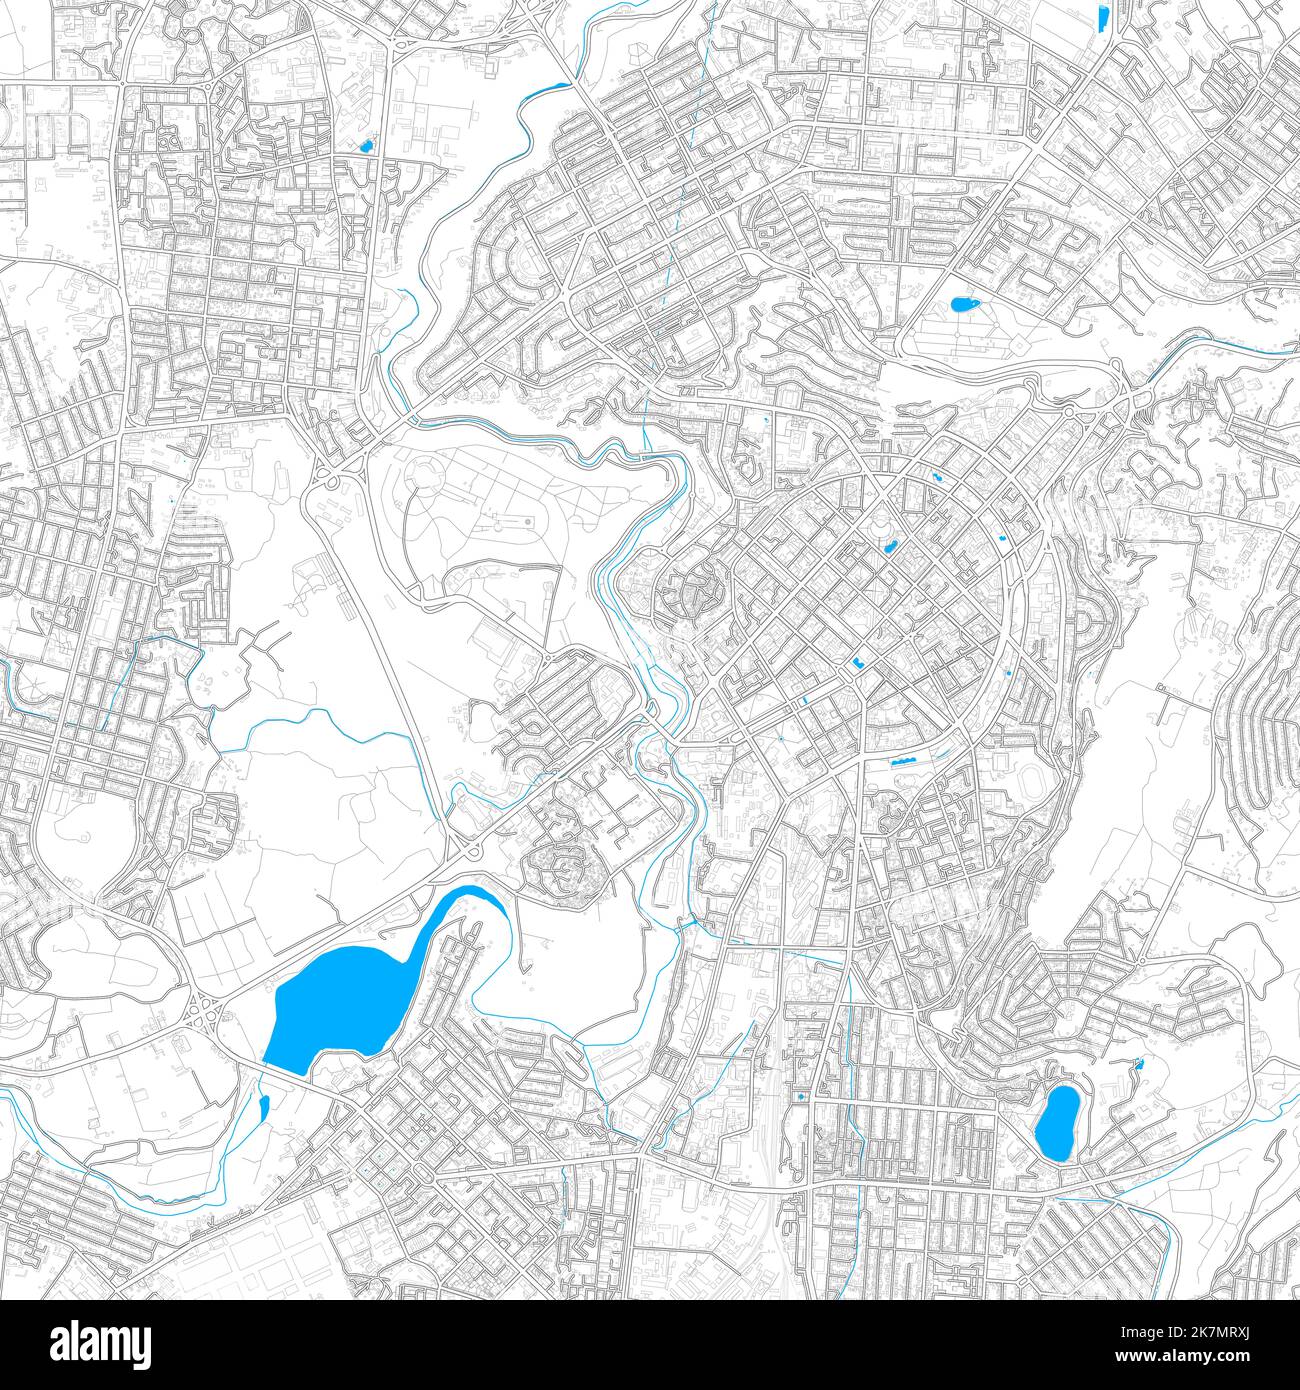 Jerewan, Armenien hochauflösende Vektorkarte mit editierbaren Pfaden. Helle Umrisse für Hauptstraßen. Verwenden Sie es für jeden gedruckten und digitalen Hintergrund. Blaue s Stock Vektor